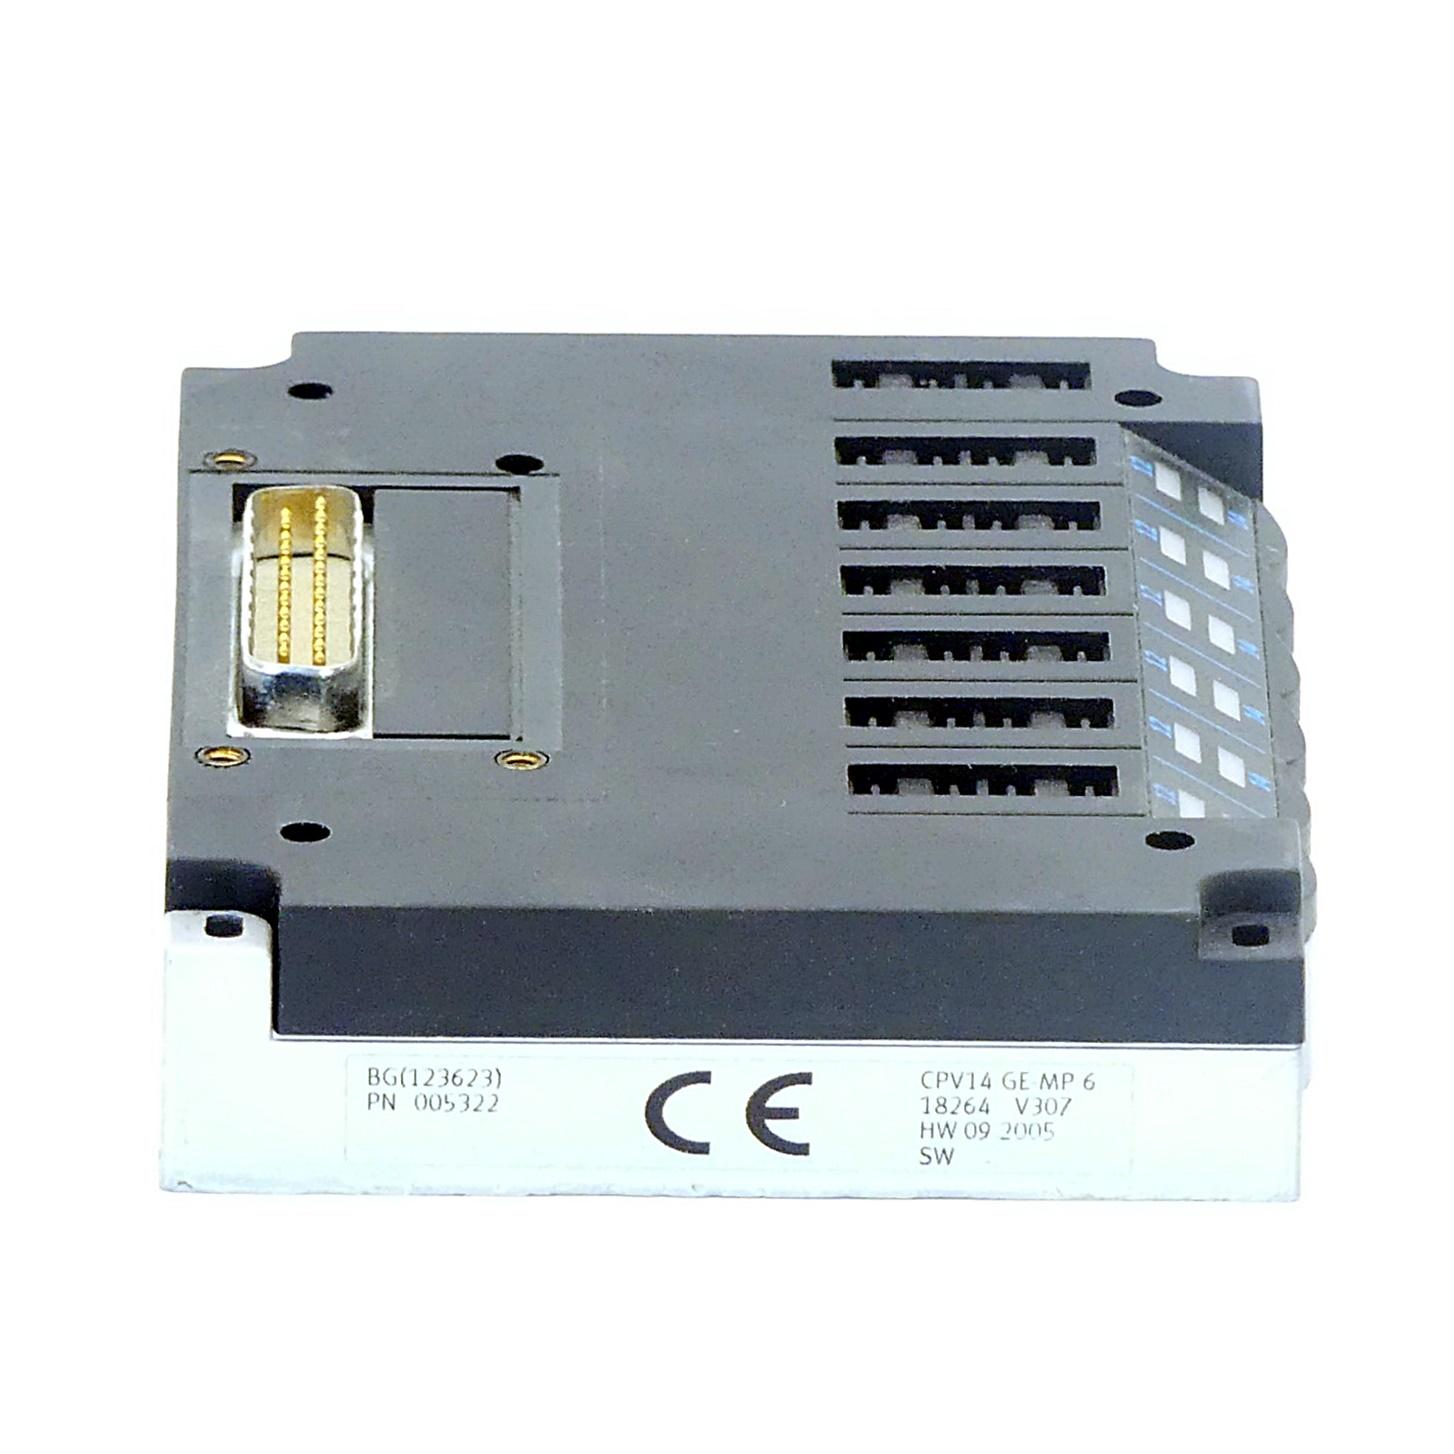 Produktfoto 3 von FESTO Elektrische Anschaltung CPV14-GE-MP-6